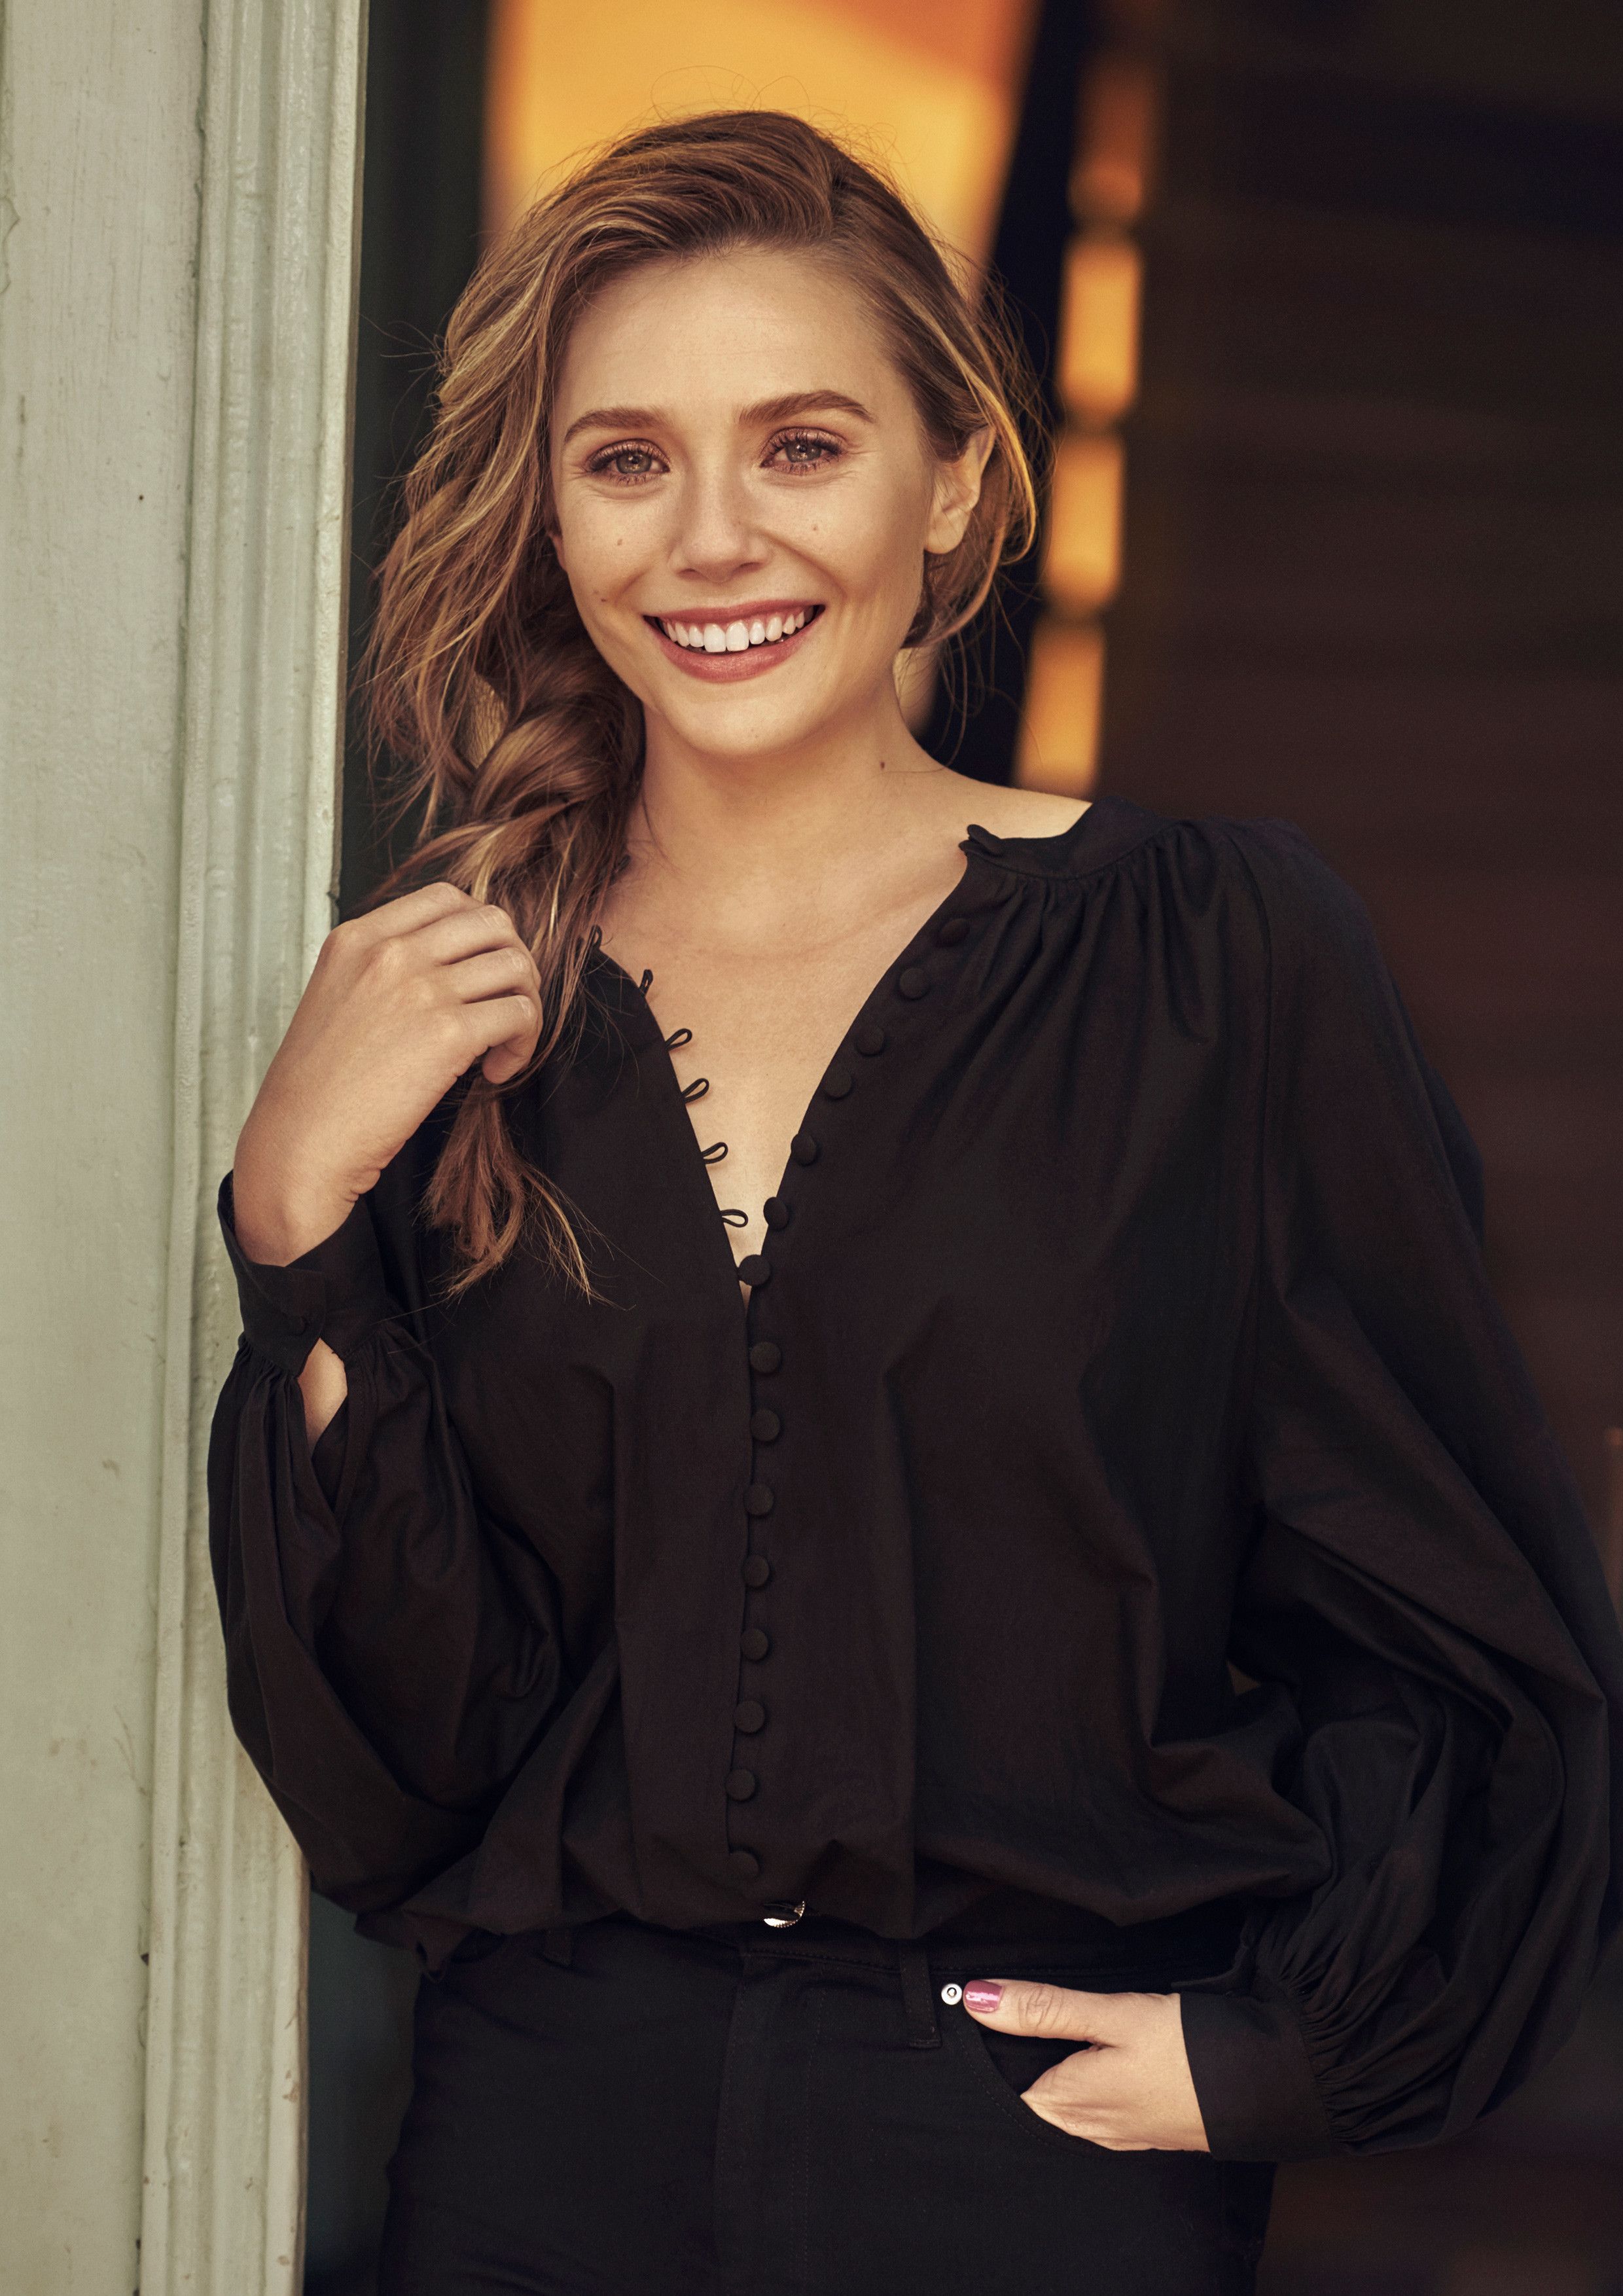 Elizabeth Olsen Glamour Magazine Photoshoot 2018 Wallpapers